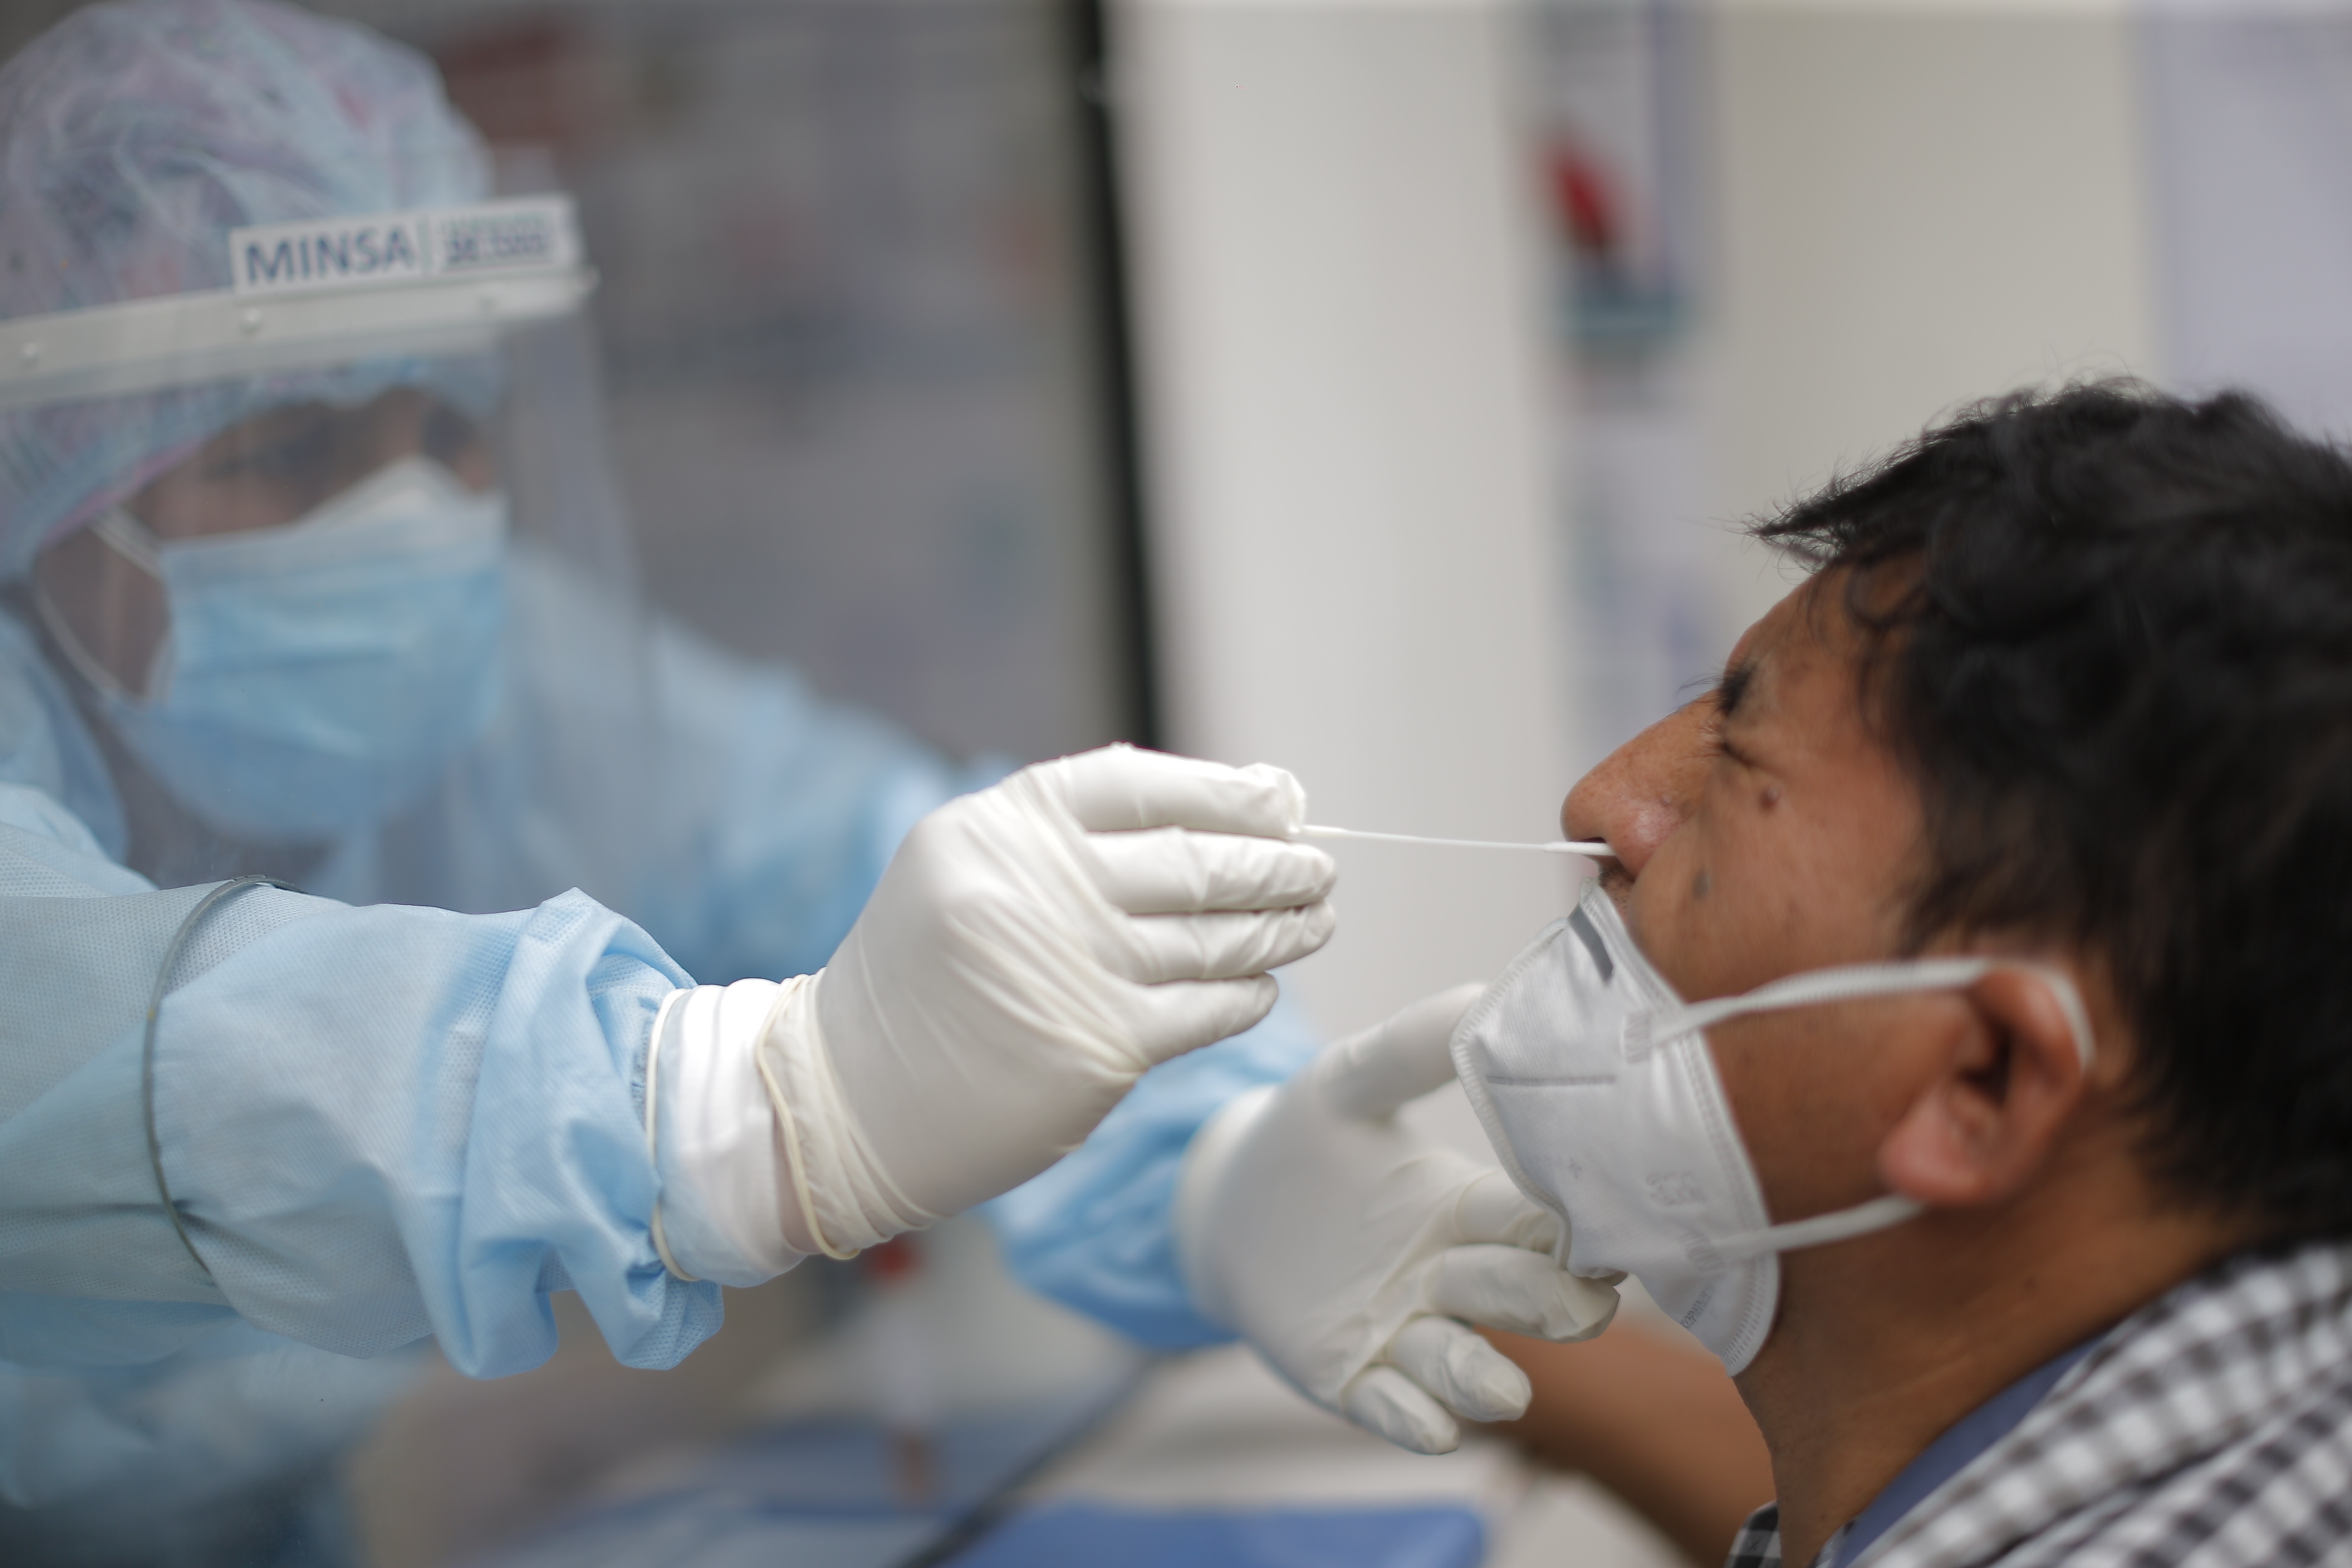 Un miembro del personal de salud realiza una prueba de covid-19 en Lima (Perú), en una fotografía de archivo. EFE/Luis Angel Gonzales
